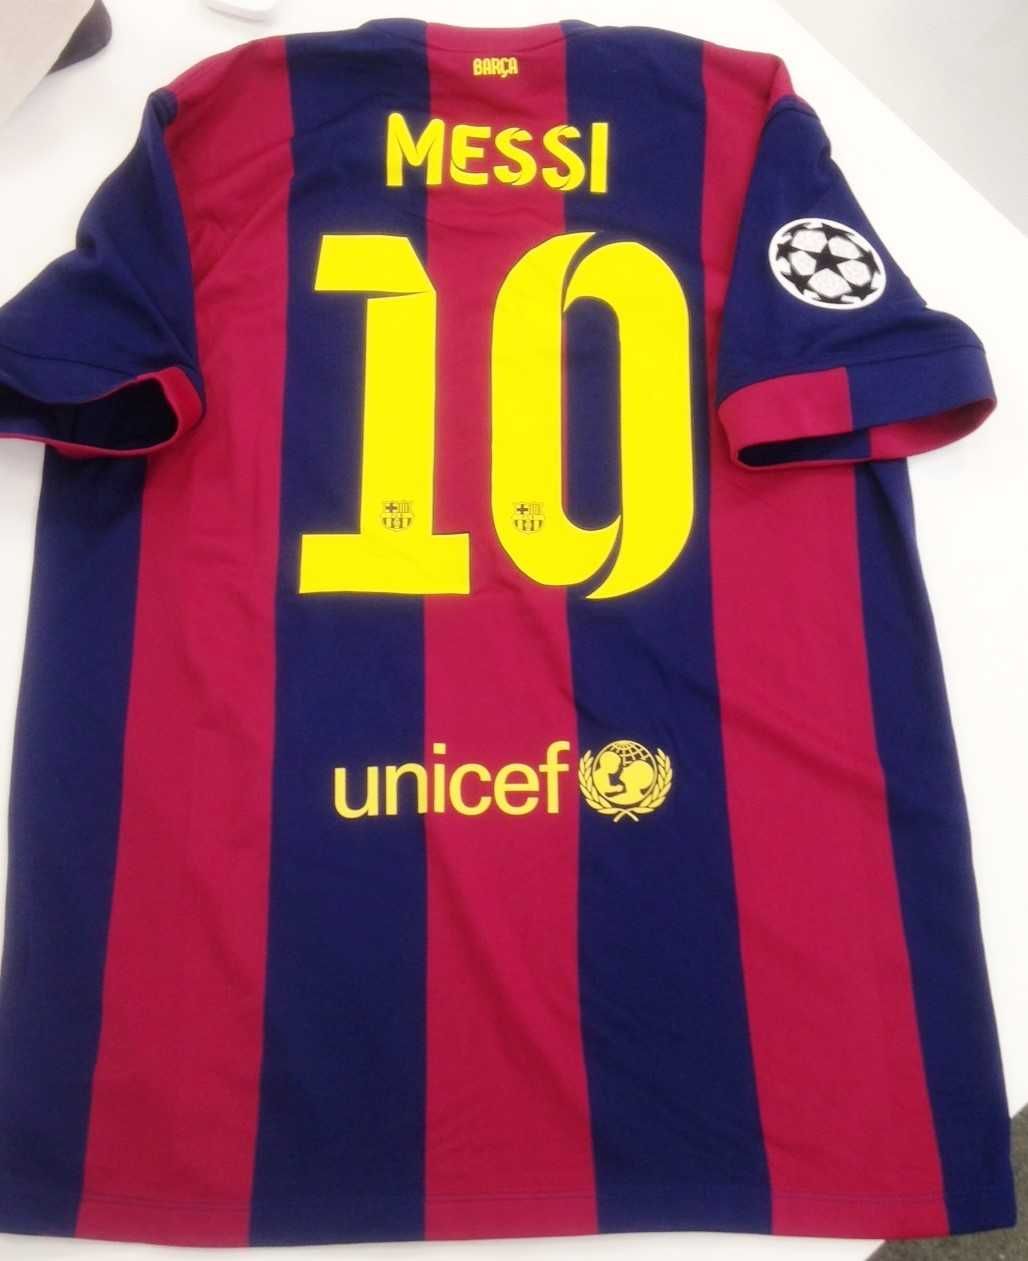 Koszulka FC Barcelona retro finał LM 2014/15, XL, nowa, Nike, Messi#10